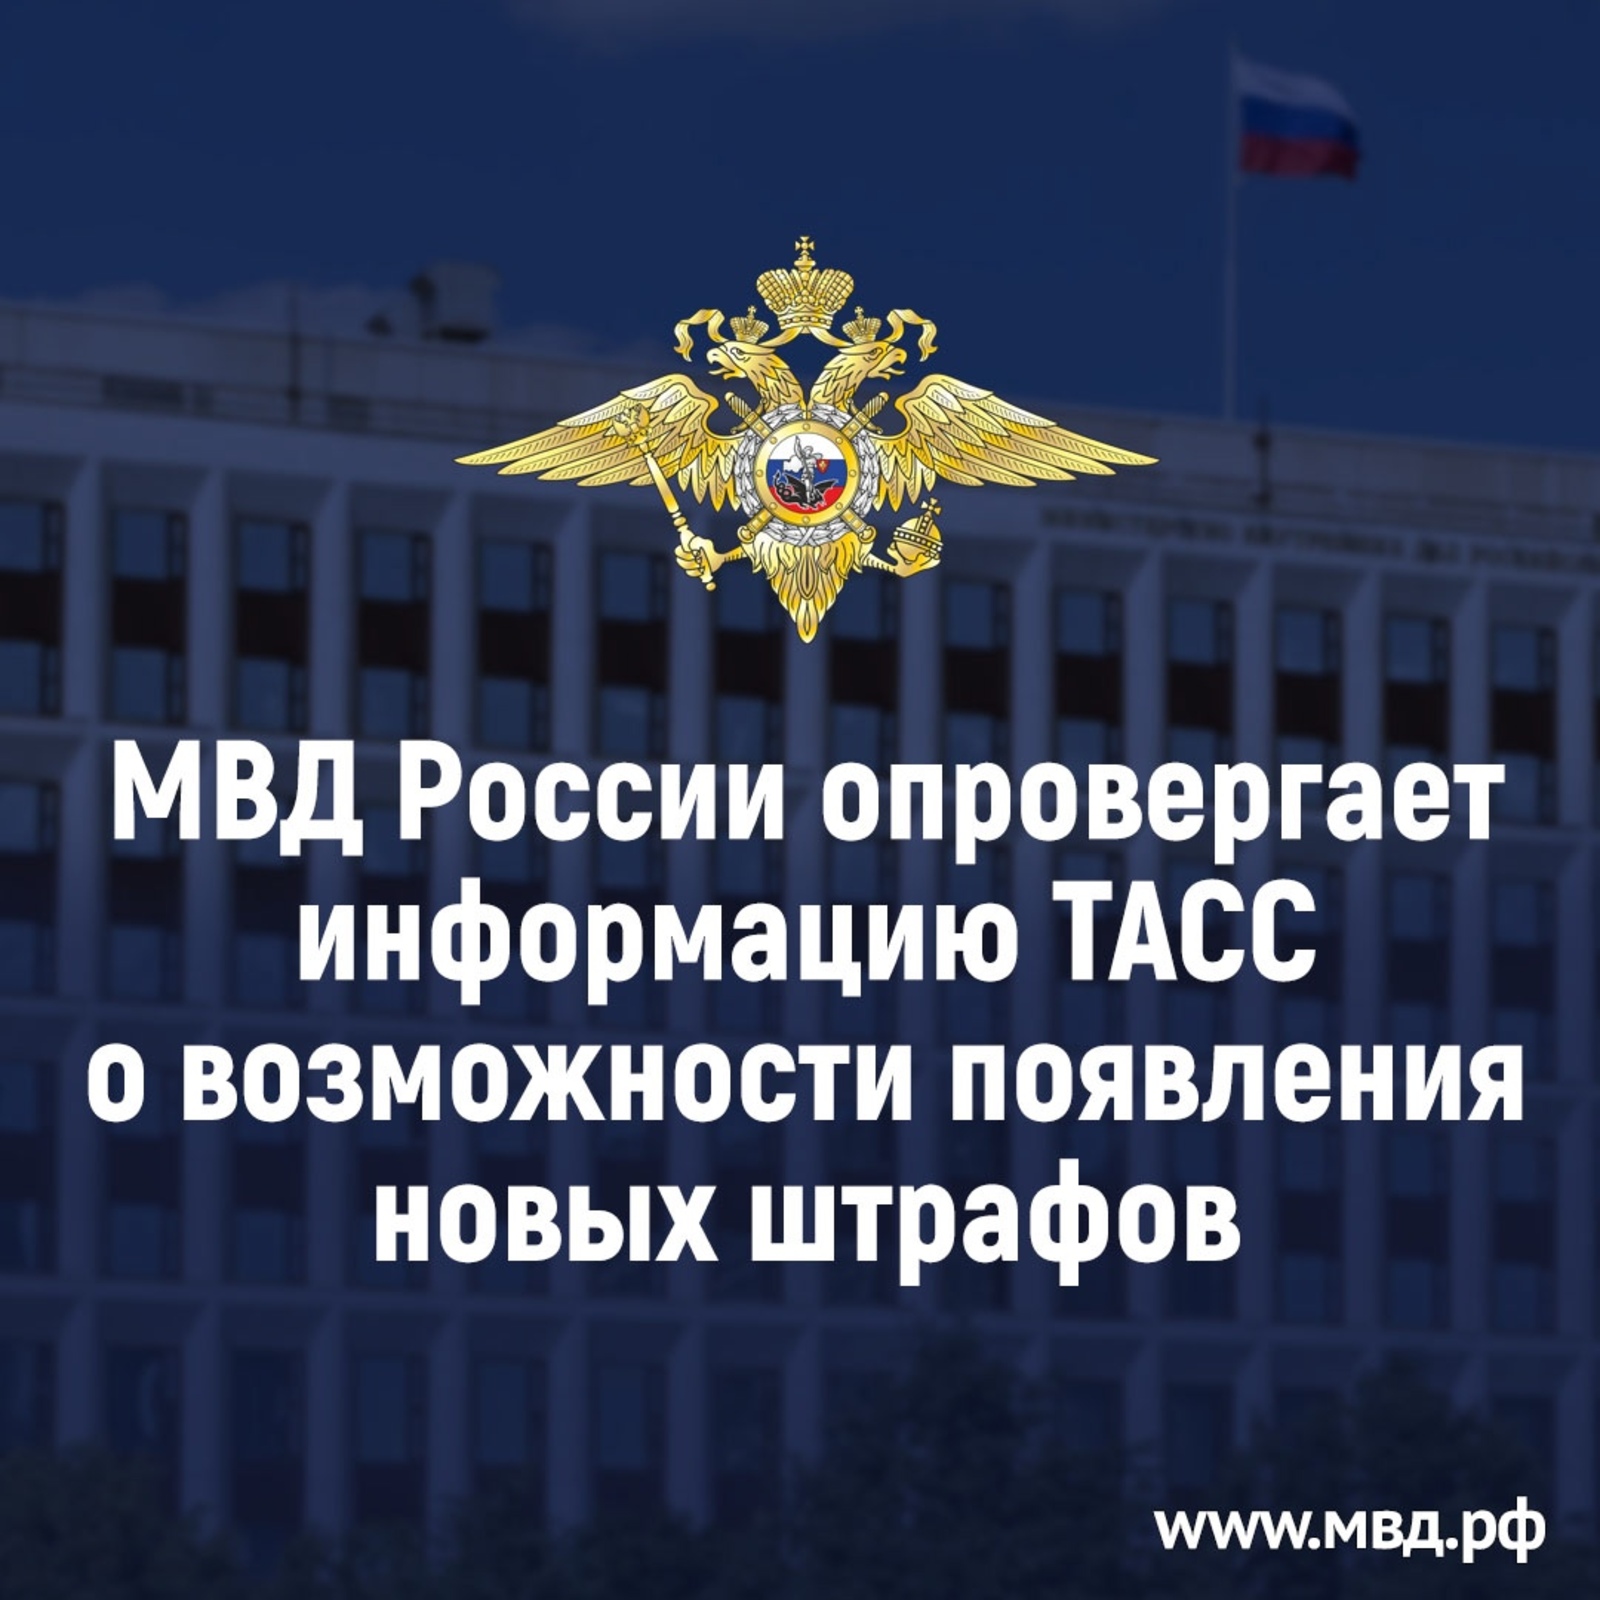 МВД России опровергает информацию ТАСС о новых штрафах  за  динамики в авто